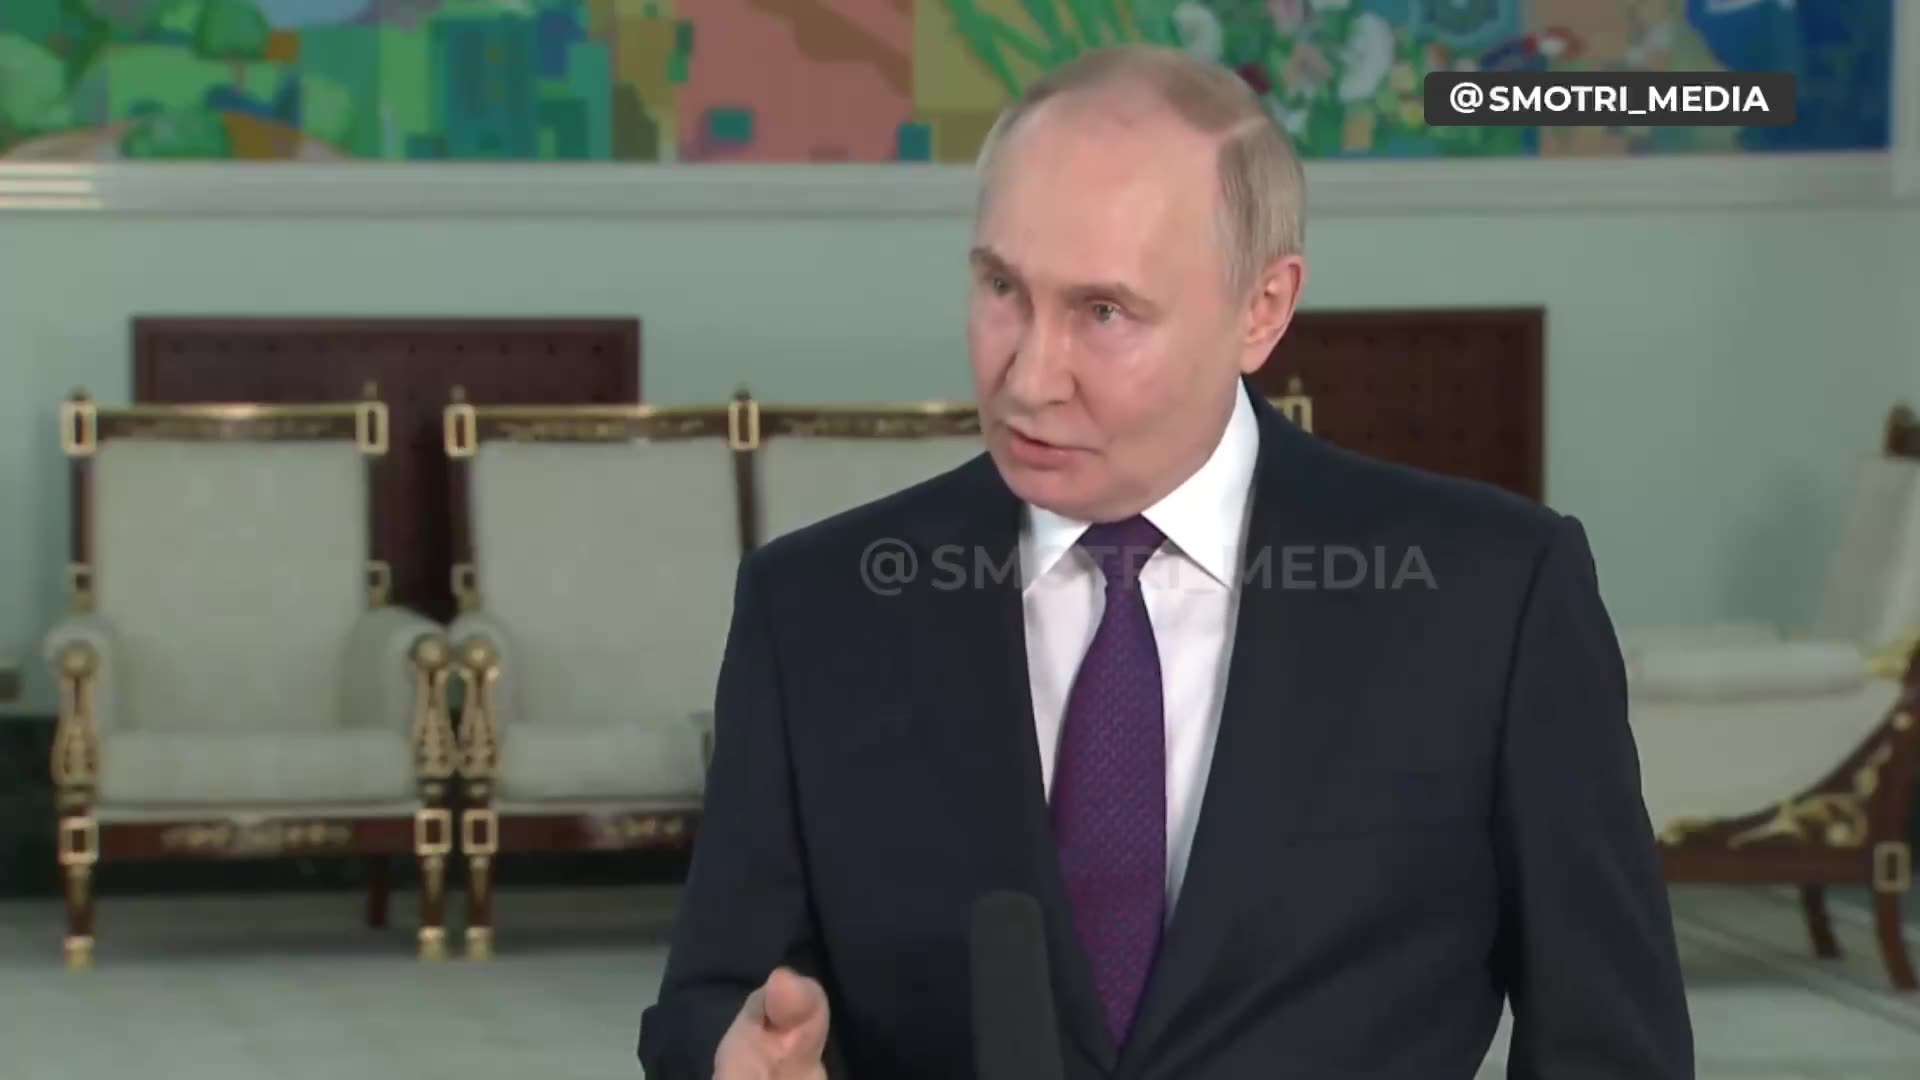 Putin lupaa, että Venäjä tekee mitä he ovat suunnitelleet riippumatta siitä, mitä joukkoja on Ukrainassa